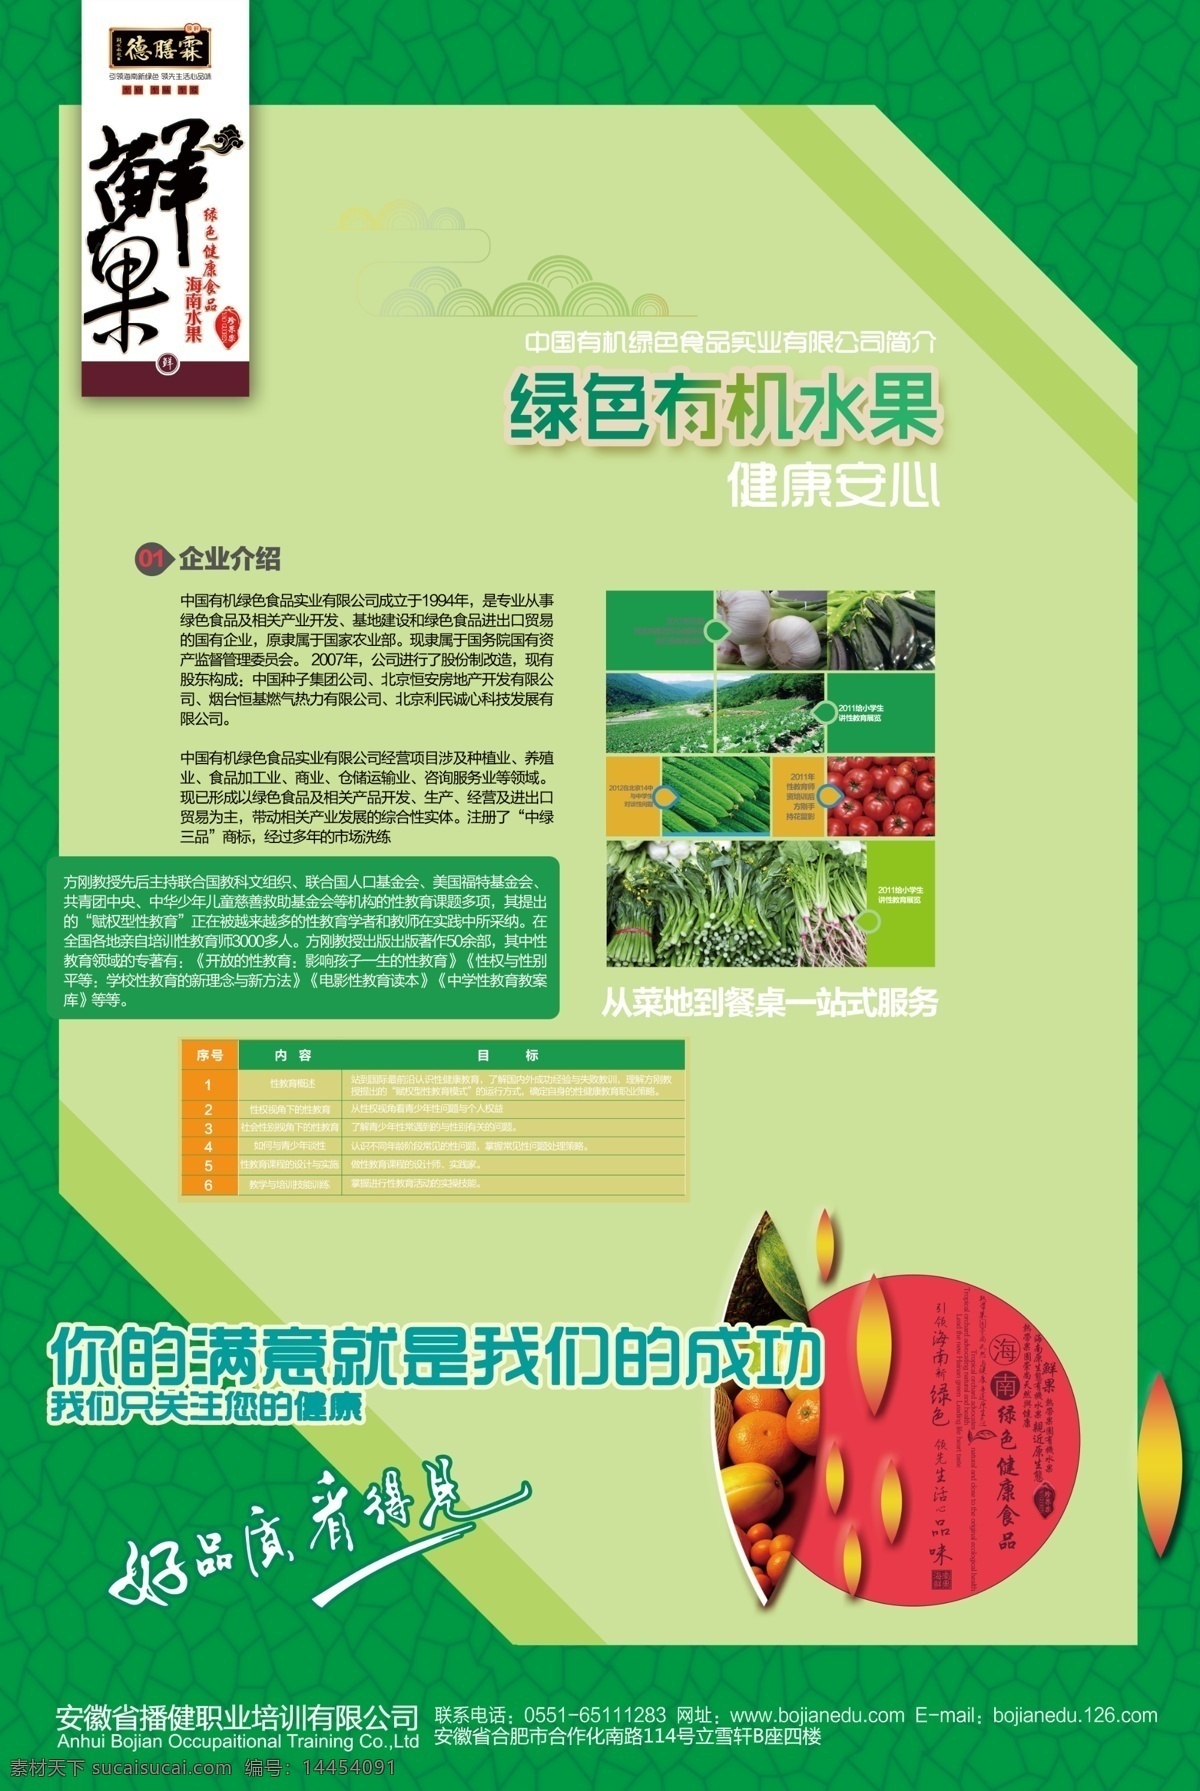 鲜果海报设计 有机果蔬海报 果蔬海报 企业介绍 psd素材 绿色海报 水果 蔬菜 底纹花纹 中国花纹 线稿水果 有机水果 健康